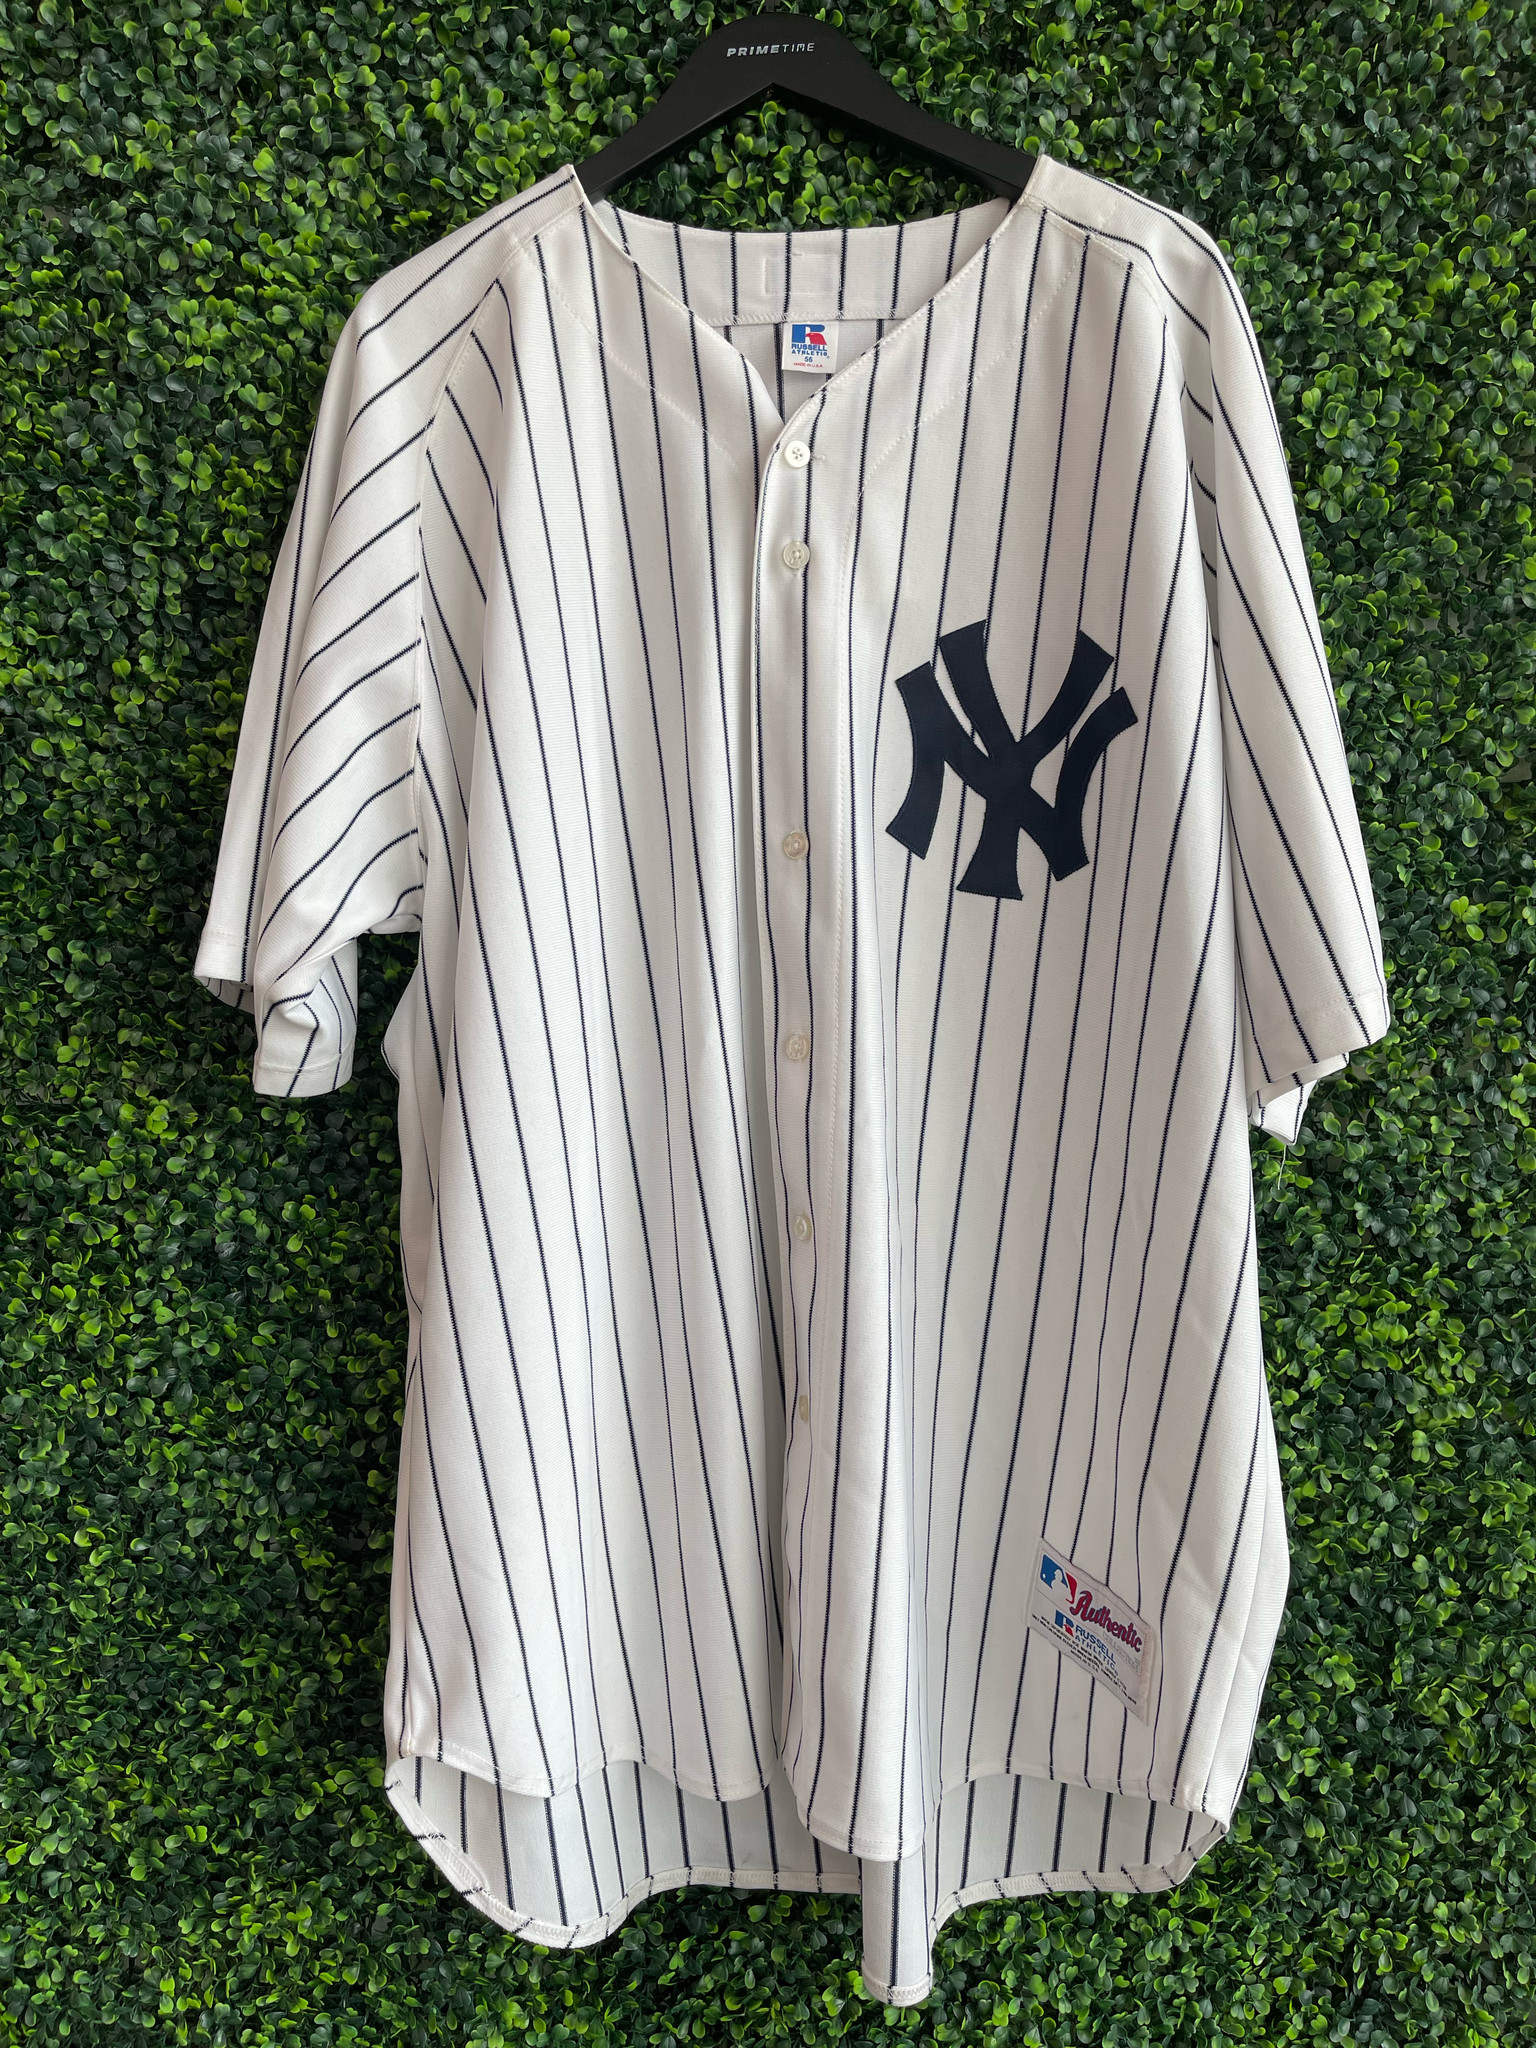 2000s New York Yankees jersey A Rod Rodriguez sz. 3Xl